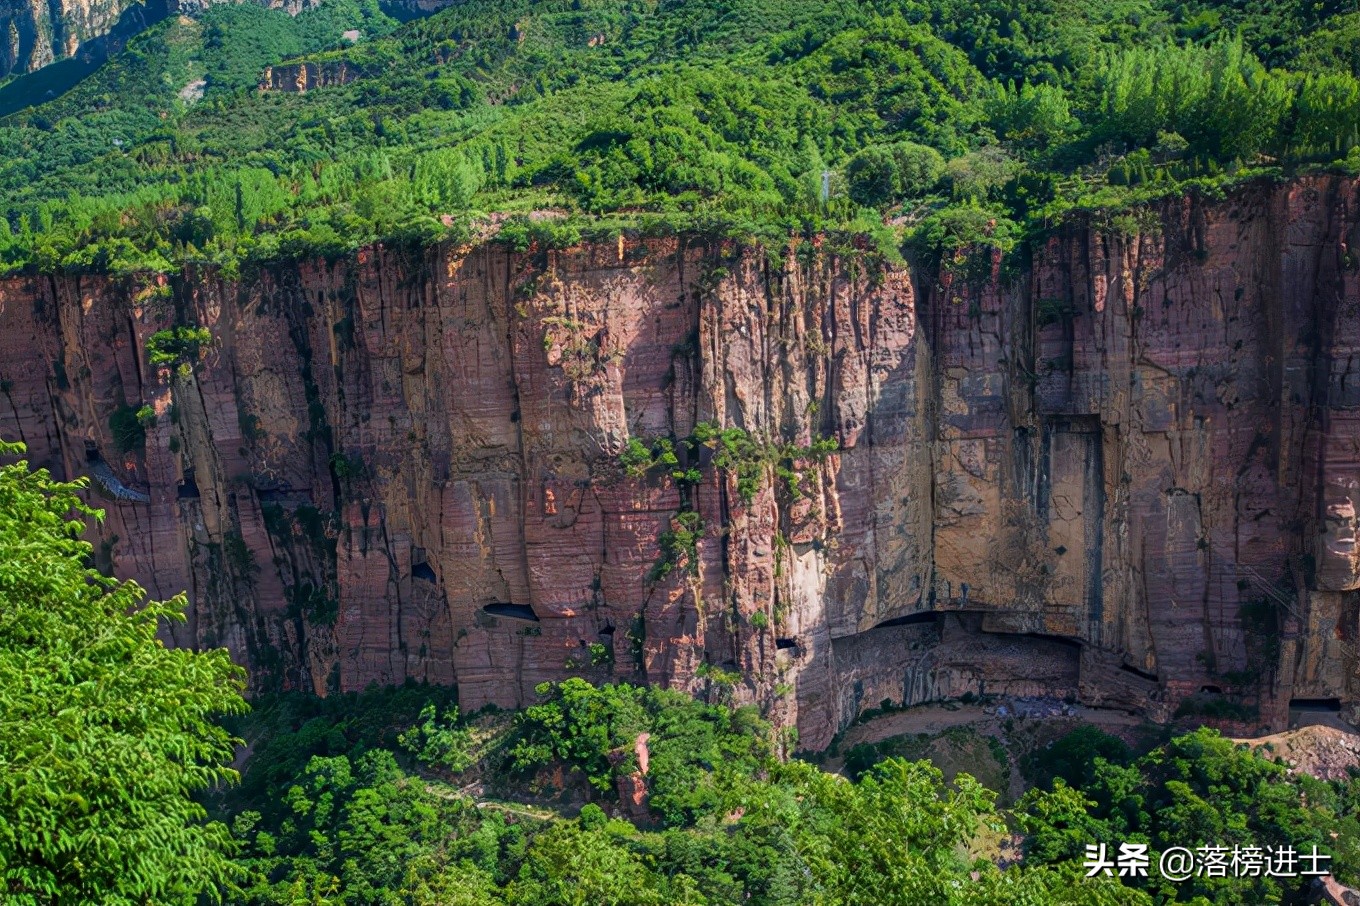 河南辉县有条“人间奇迹”挂壁公路，绝壁如刀削斧砍，充满了惊险